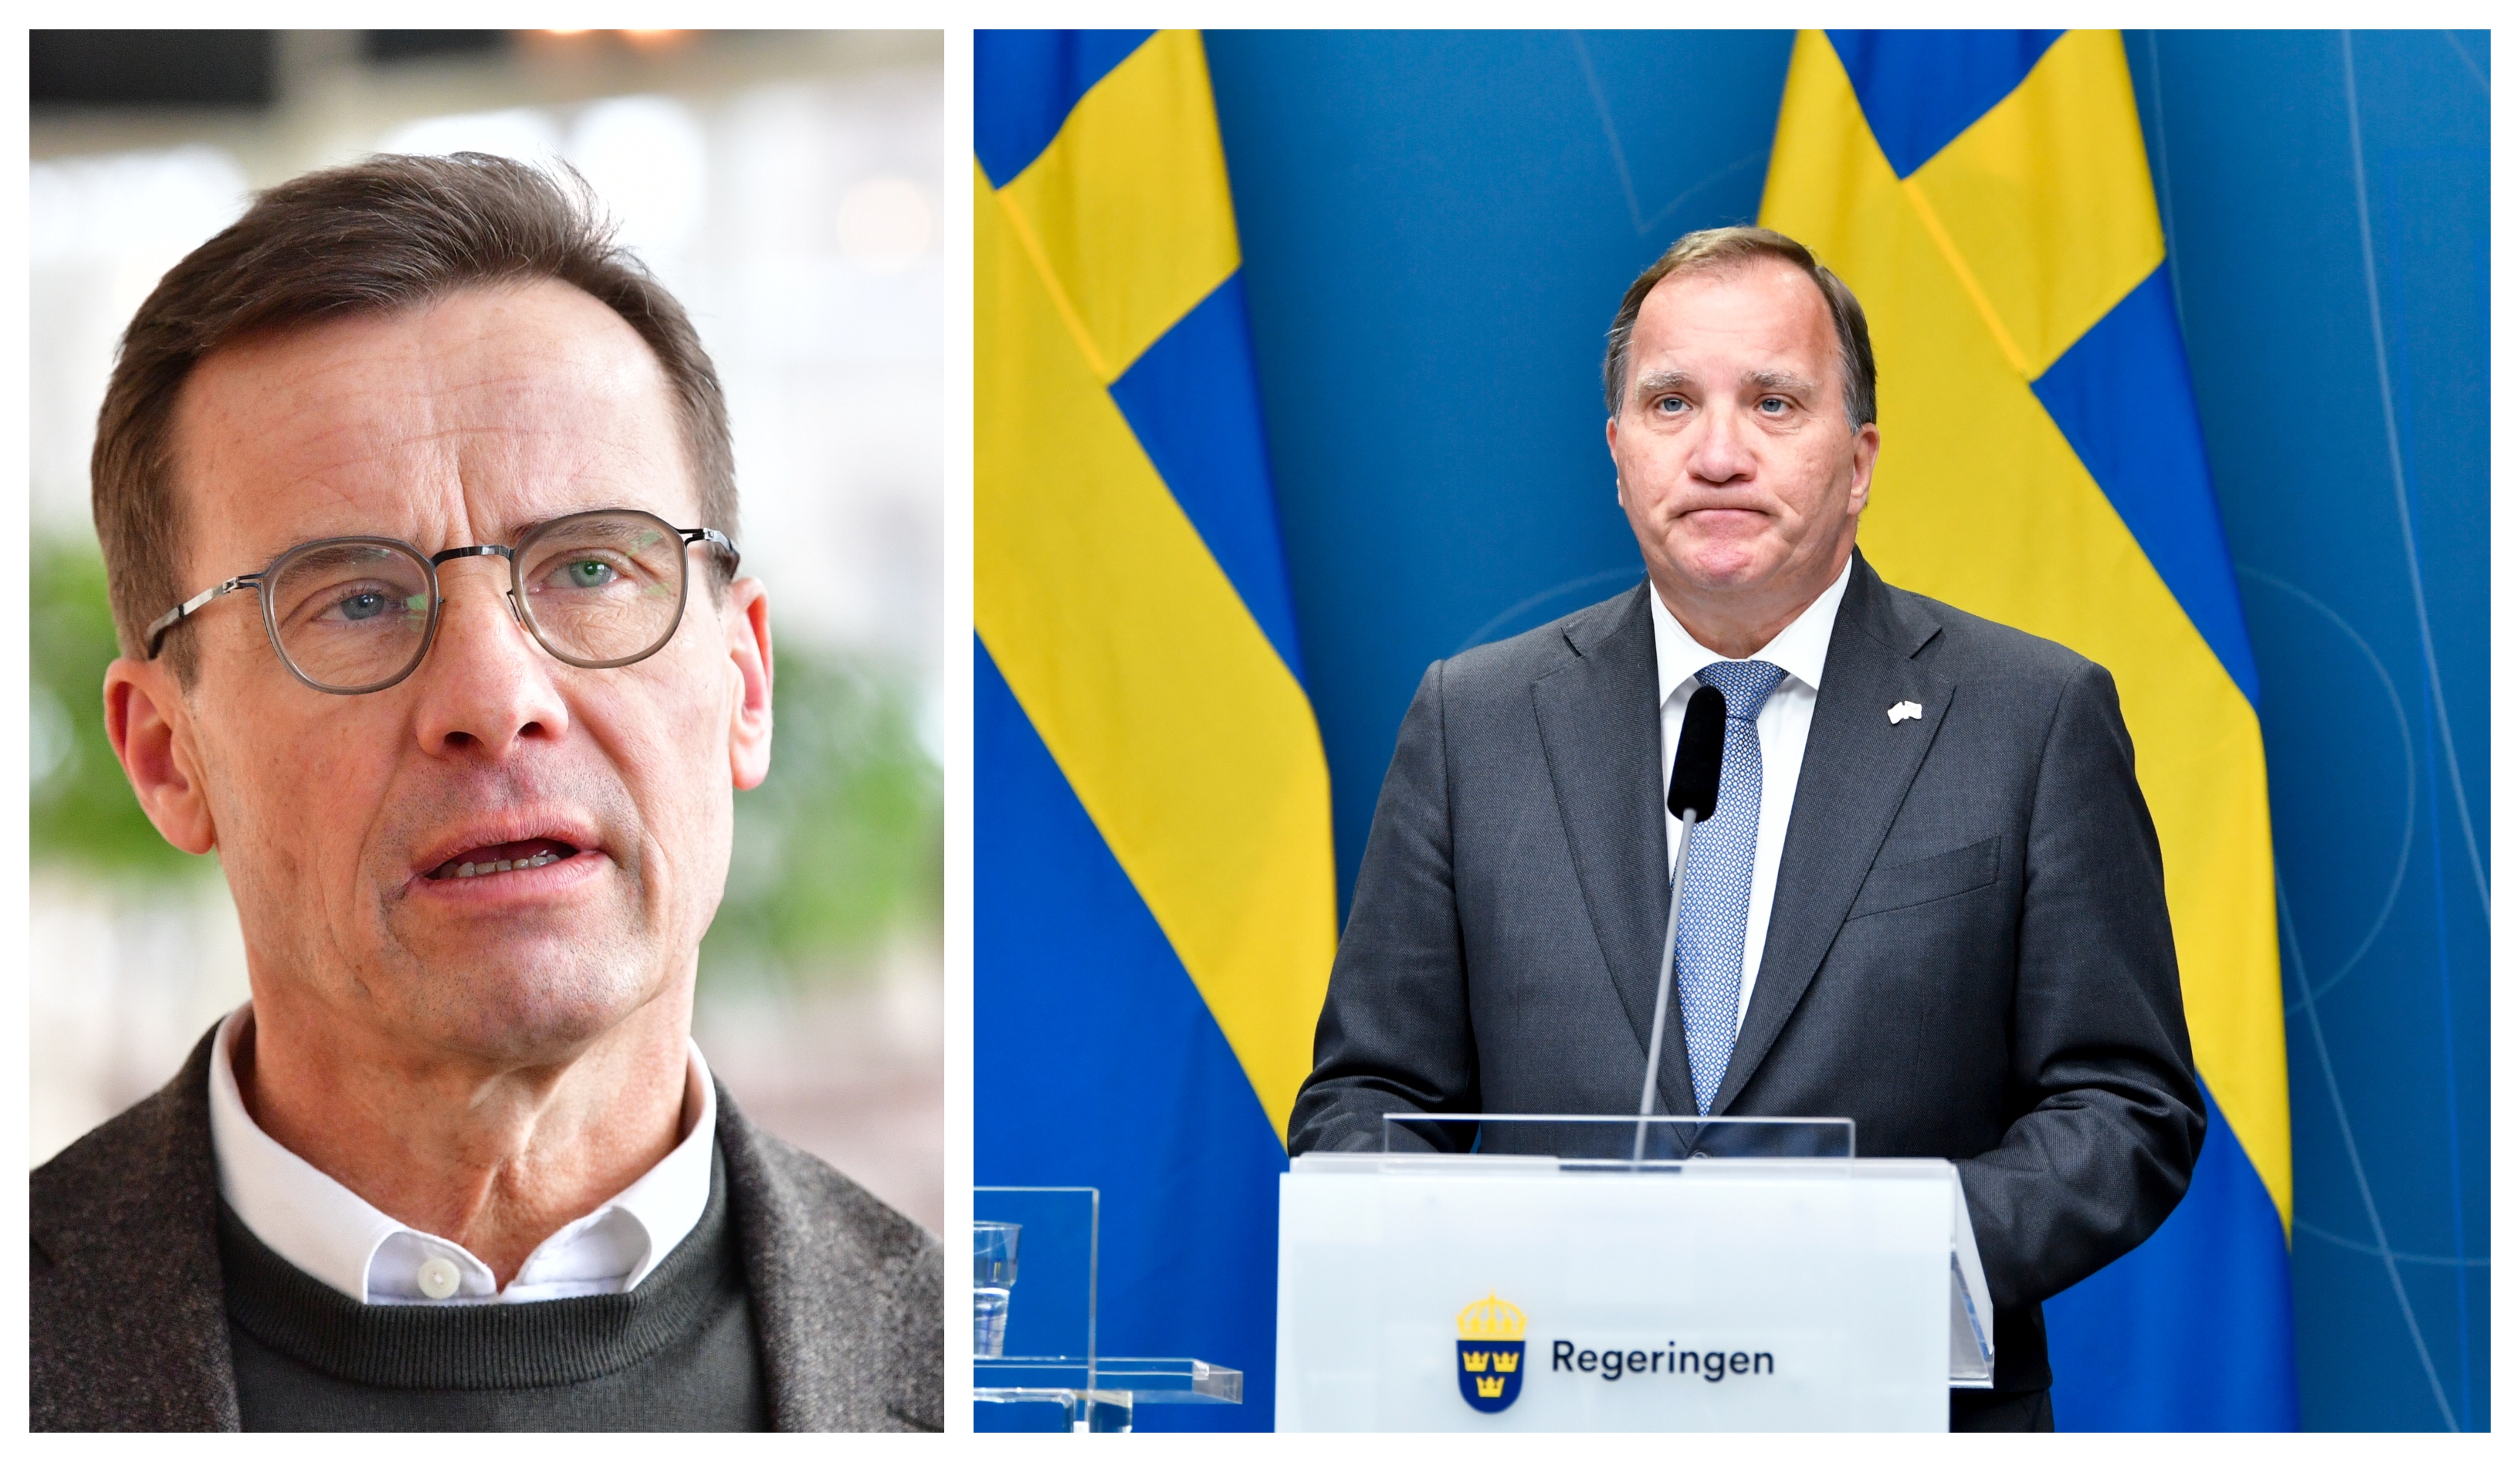 Svenska väljare har högre förtroende för Löfven som statsminister än vad de har för Kristersson, enligt en ny mätning.